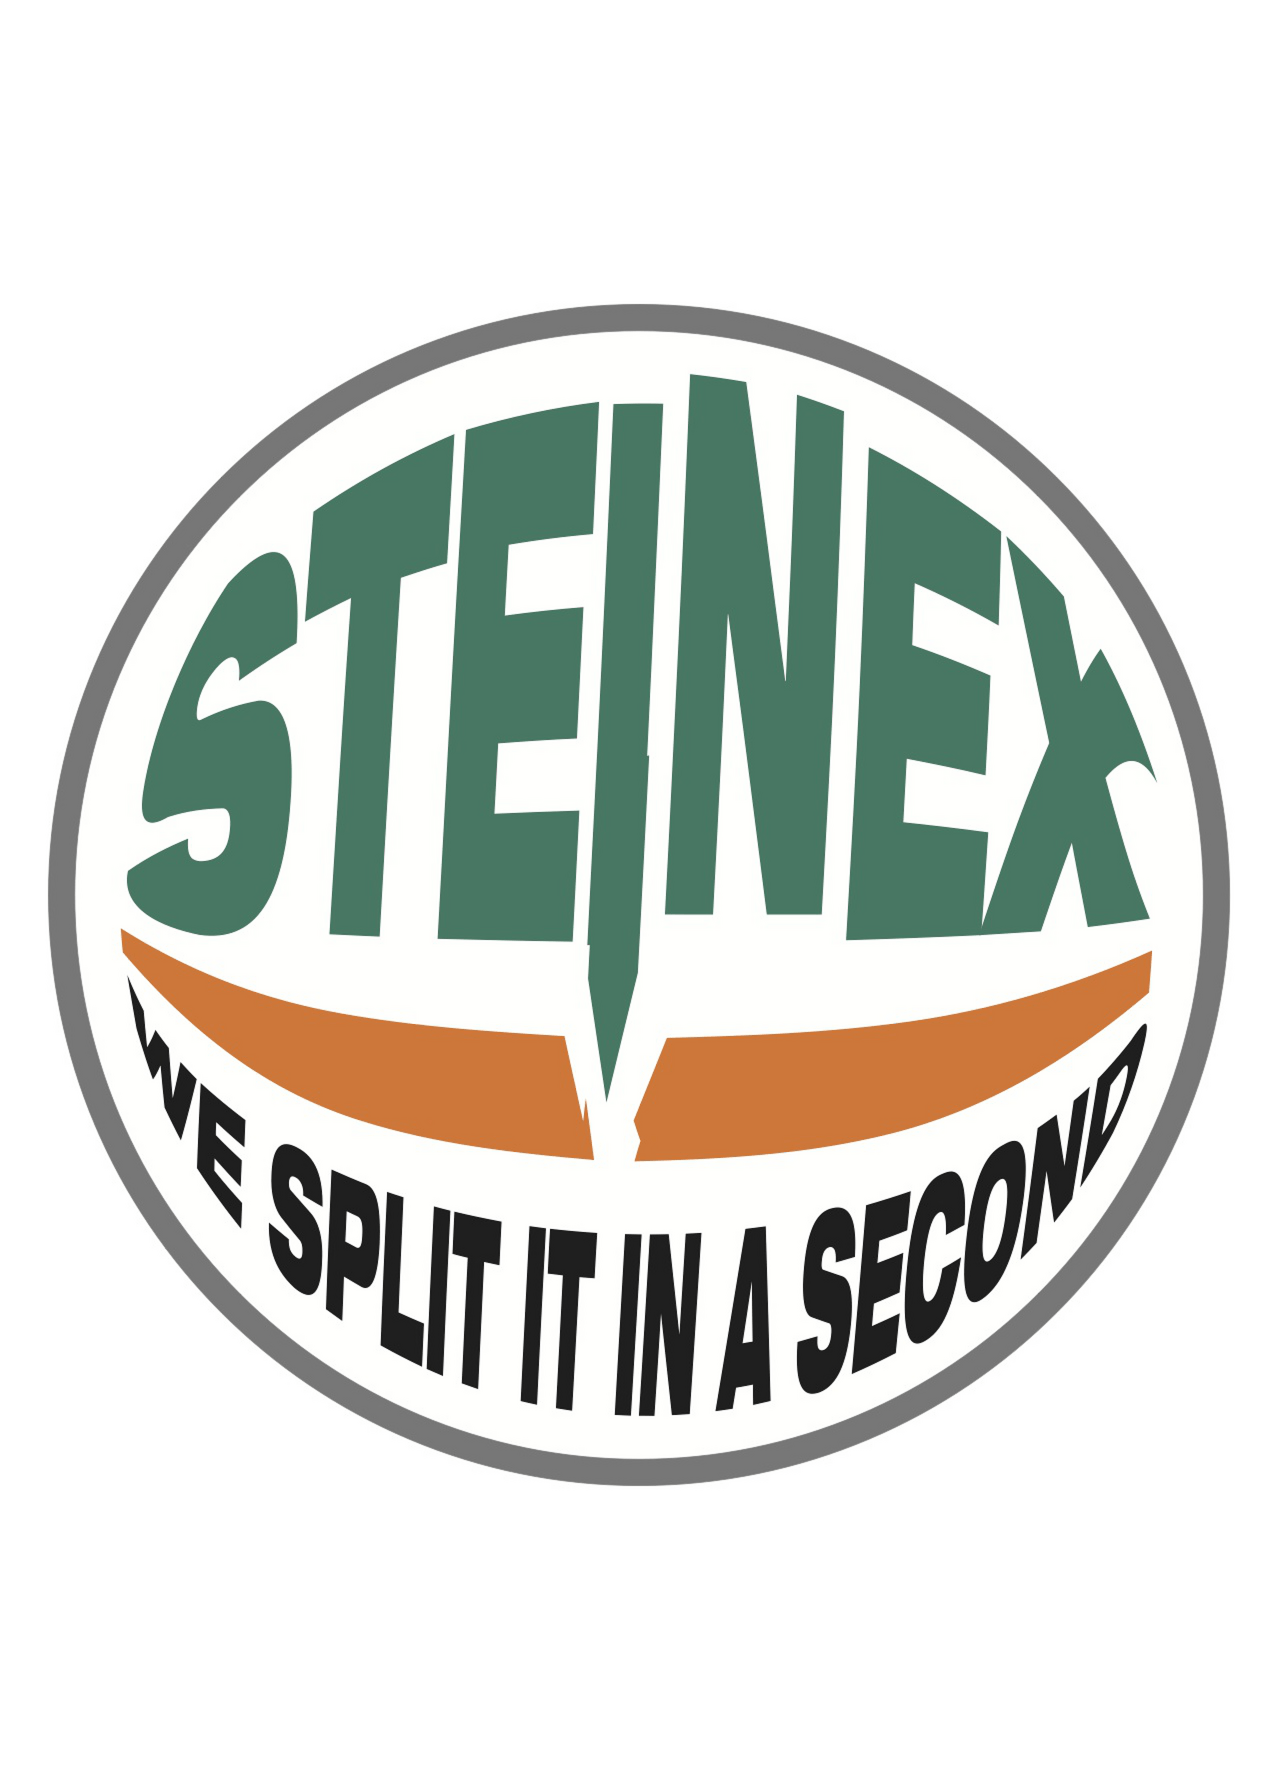 Steinex Srl